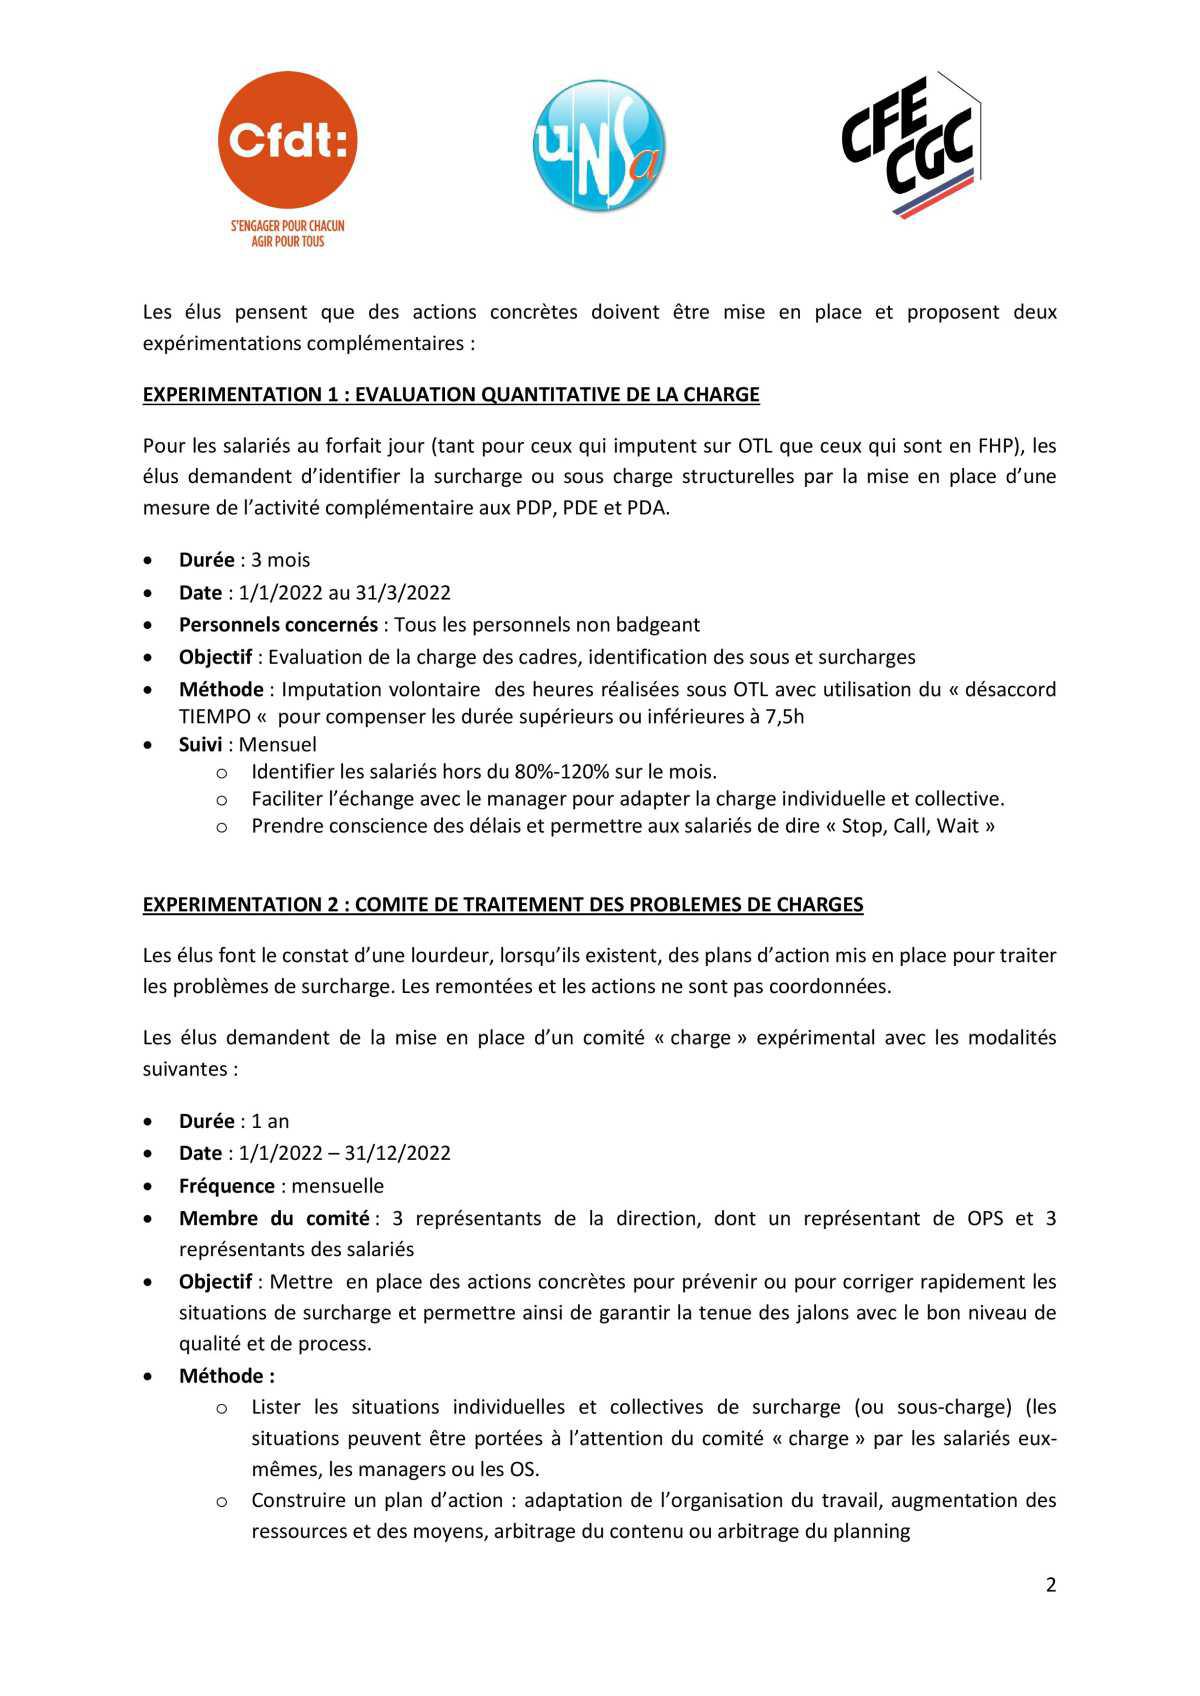 CSE de Saint Tropez - Réunion du 7 décembre 2021 - Résolution